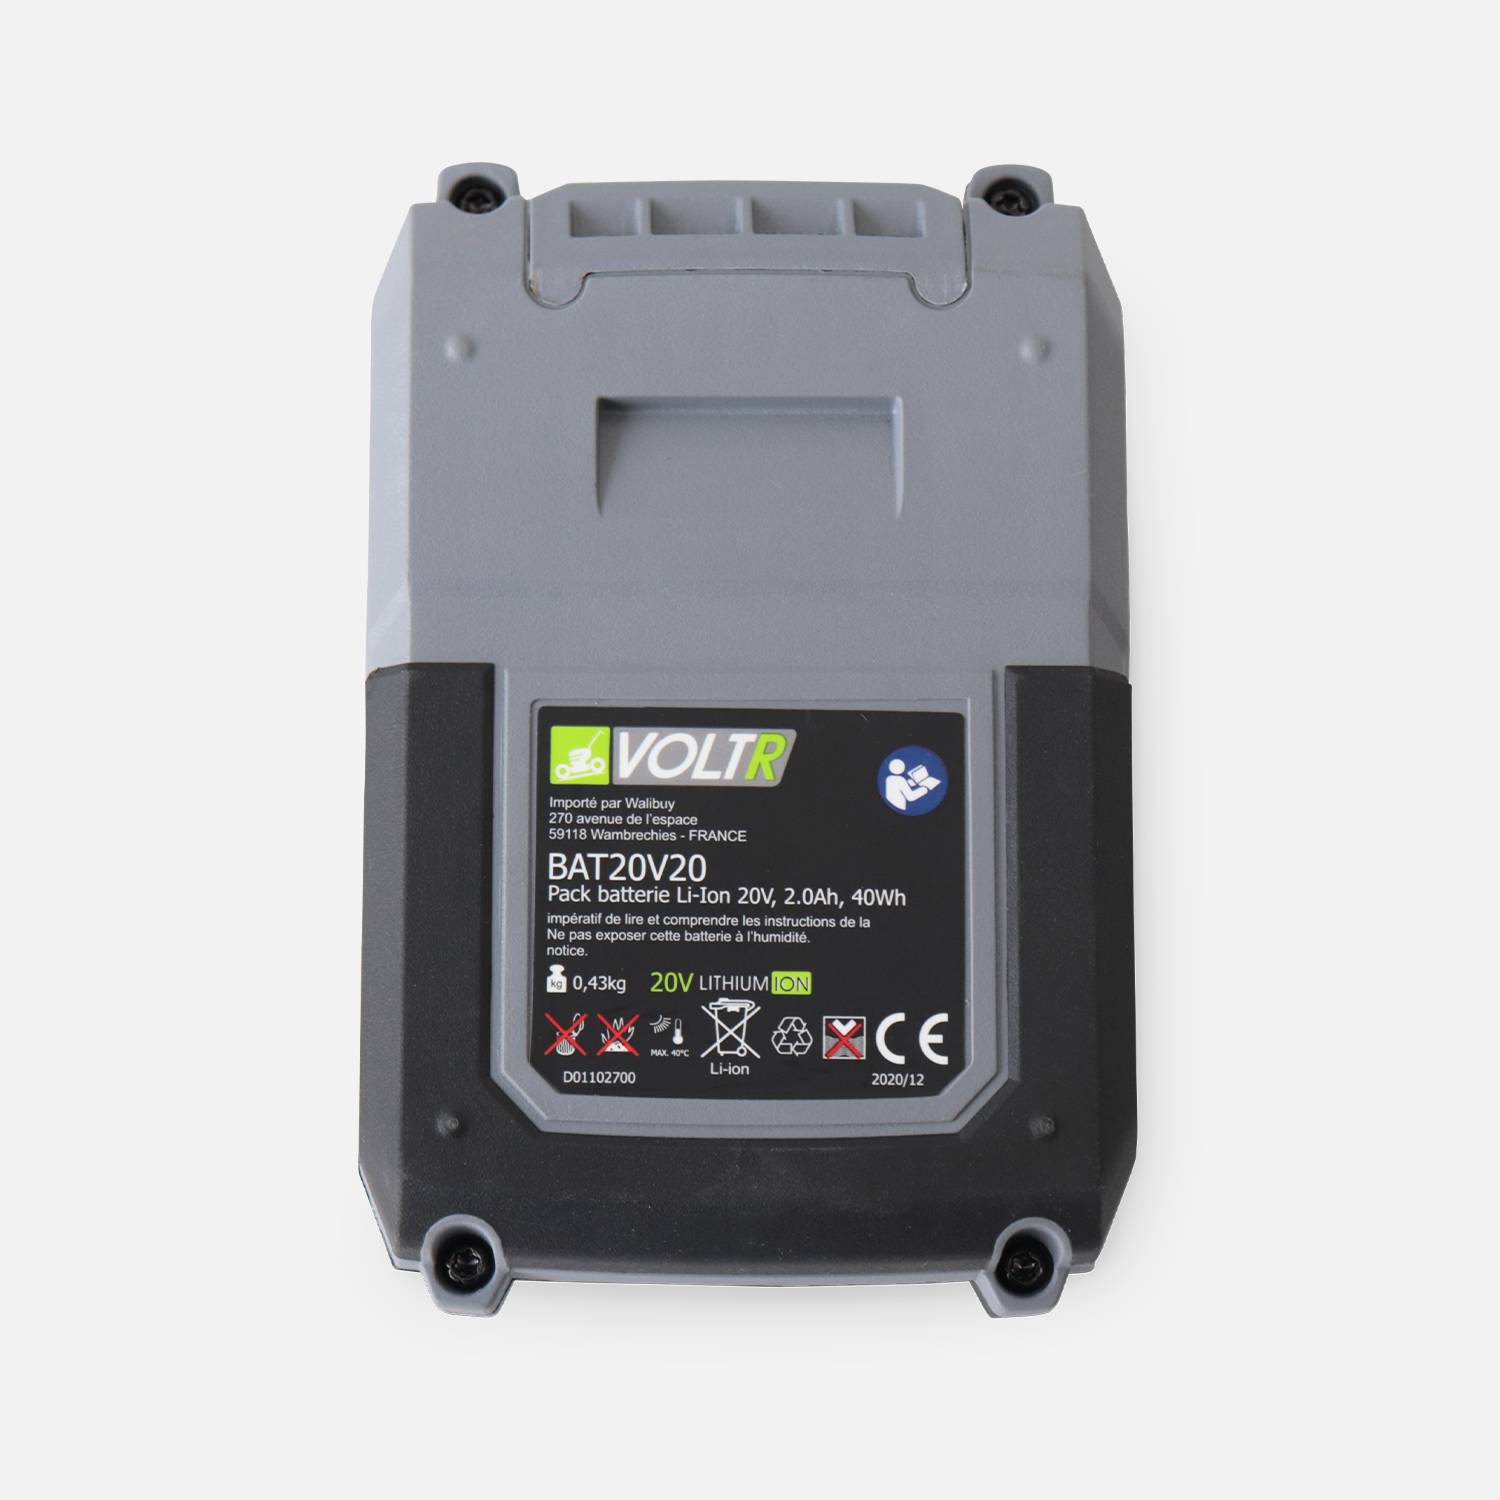 Batterie VOLTR 20V 2.0Ah pour outils VOLTR 20V - interchangeables, revêtement antidérapant, coins renforcés, anti-casse Photo2